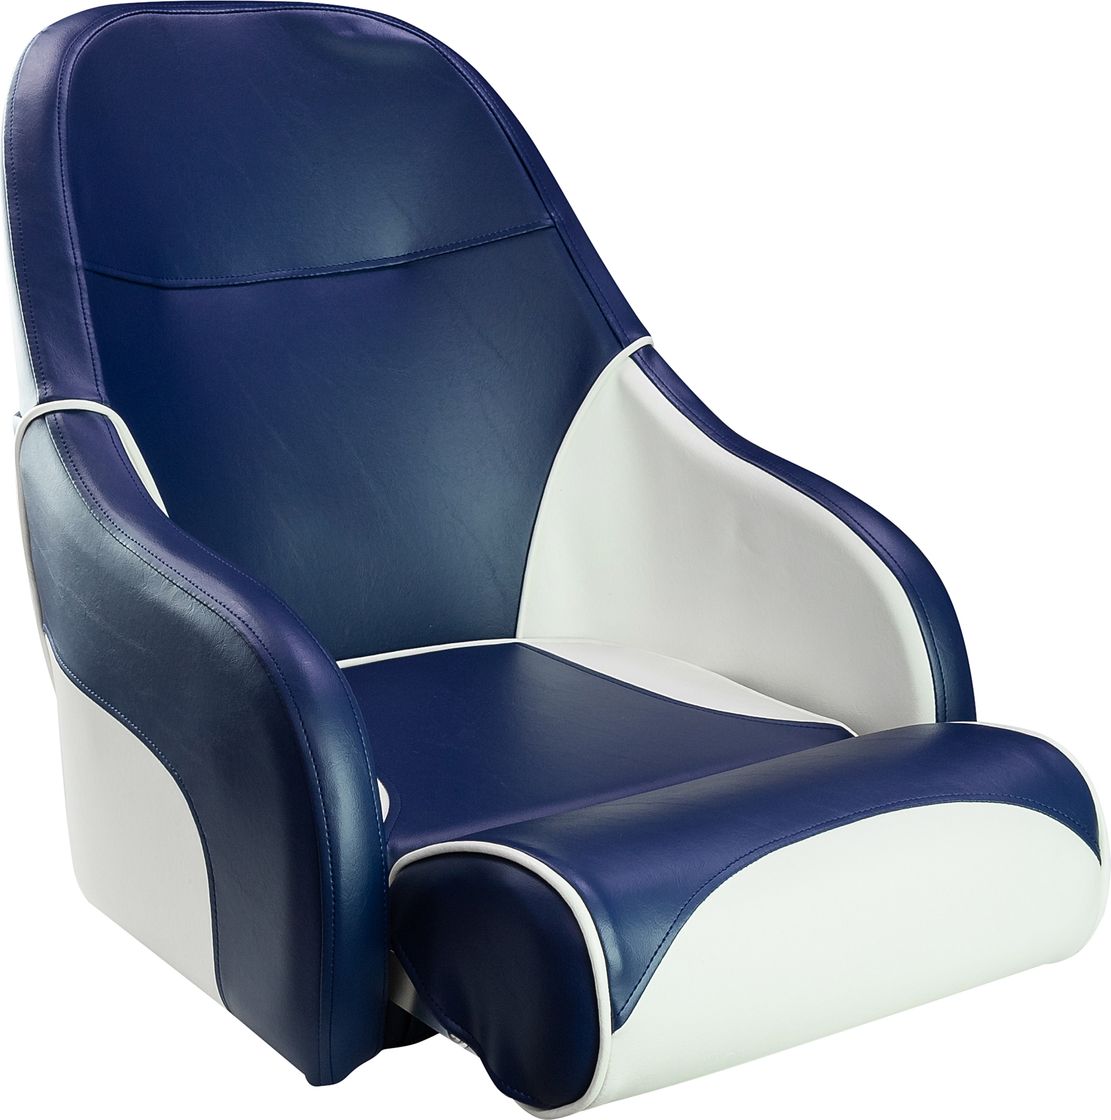 Кресло с болстером Ocean Flip Up, обивка синий/белый винил 13127WB-MR косметичка на молнии наружный карман с ручкой синий